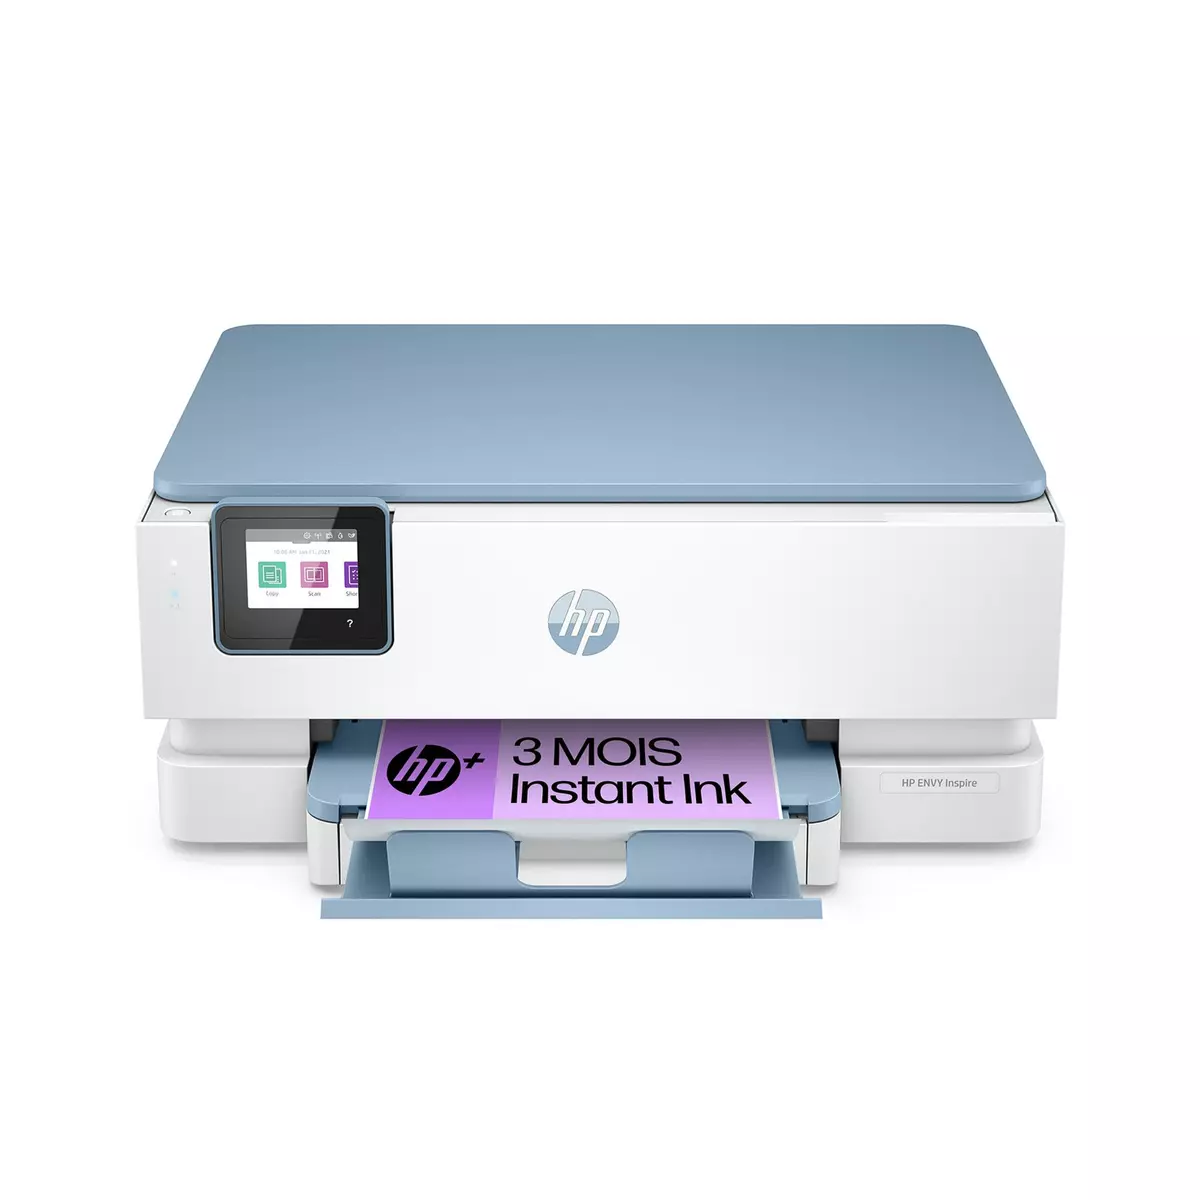 HP Imprimante ENVY 7221E - 3 mois d' Instant ink inclus avec HP+ - Blanc et gris